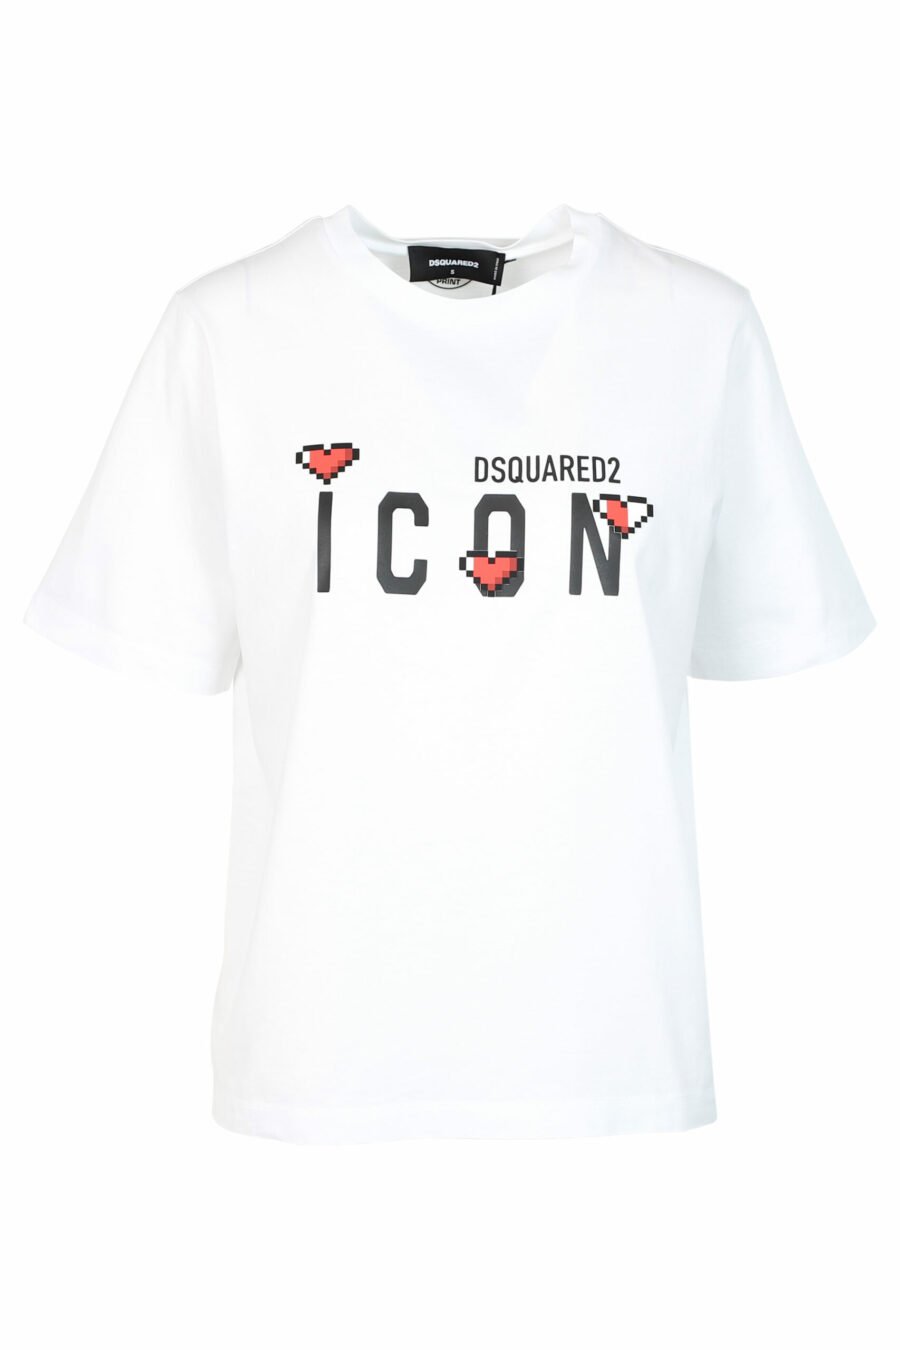 Camiseta negra con logo "icon game" - 8052134989265 scaled